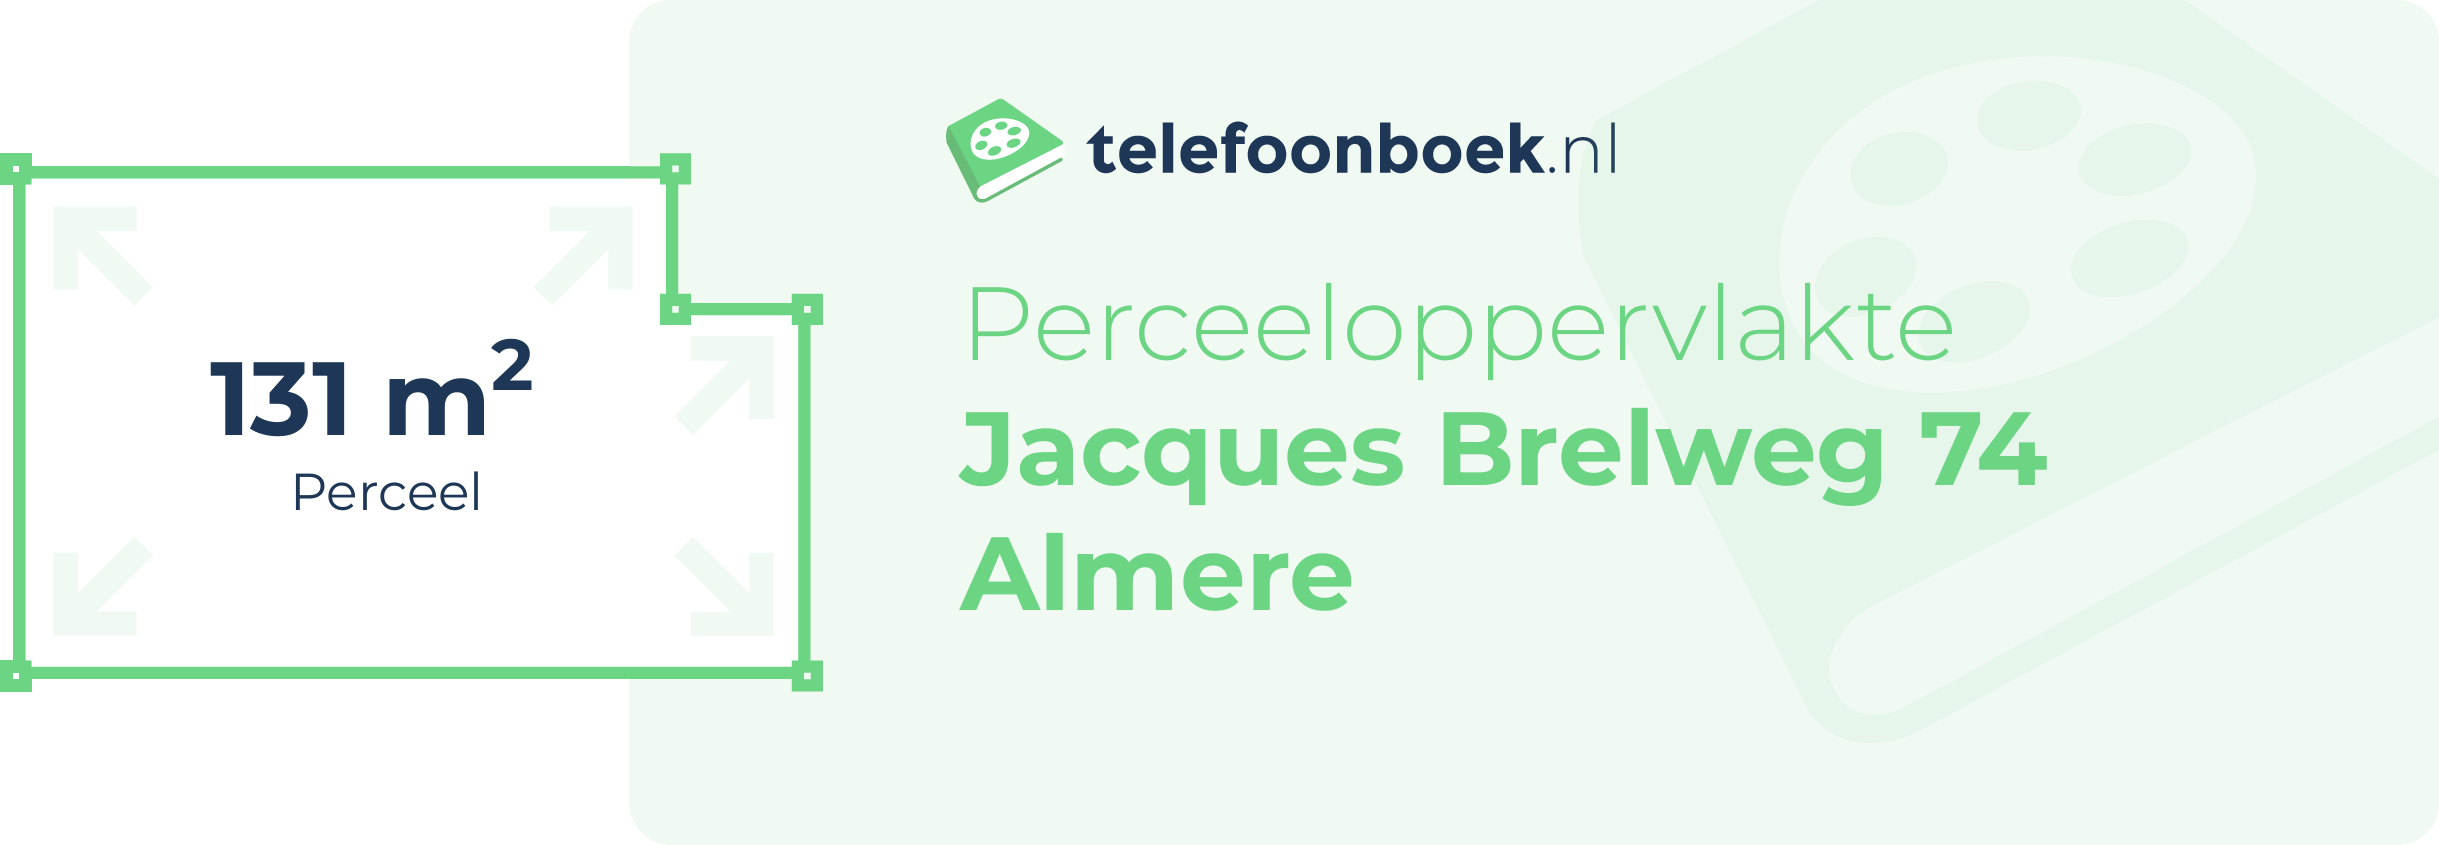 Perceeloppervlakte Jacques Brelweg 74 Almere